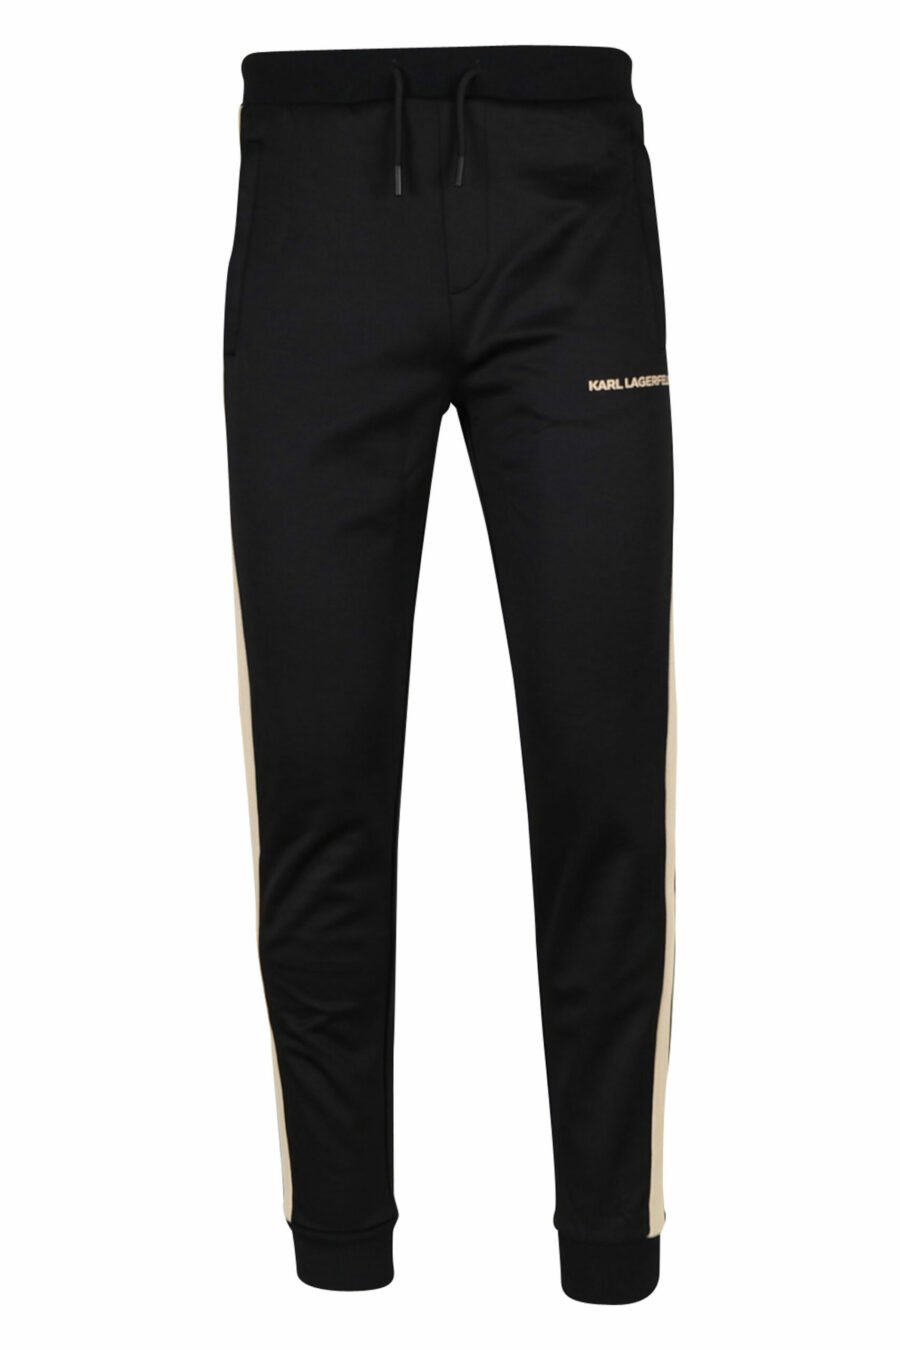 Pantalón negro con minilogo y franjas beige laterales - 4062226395175 scaled